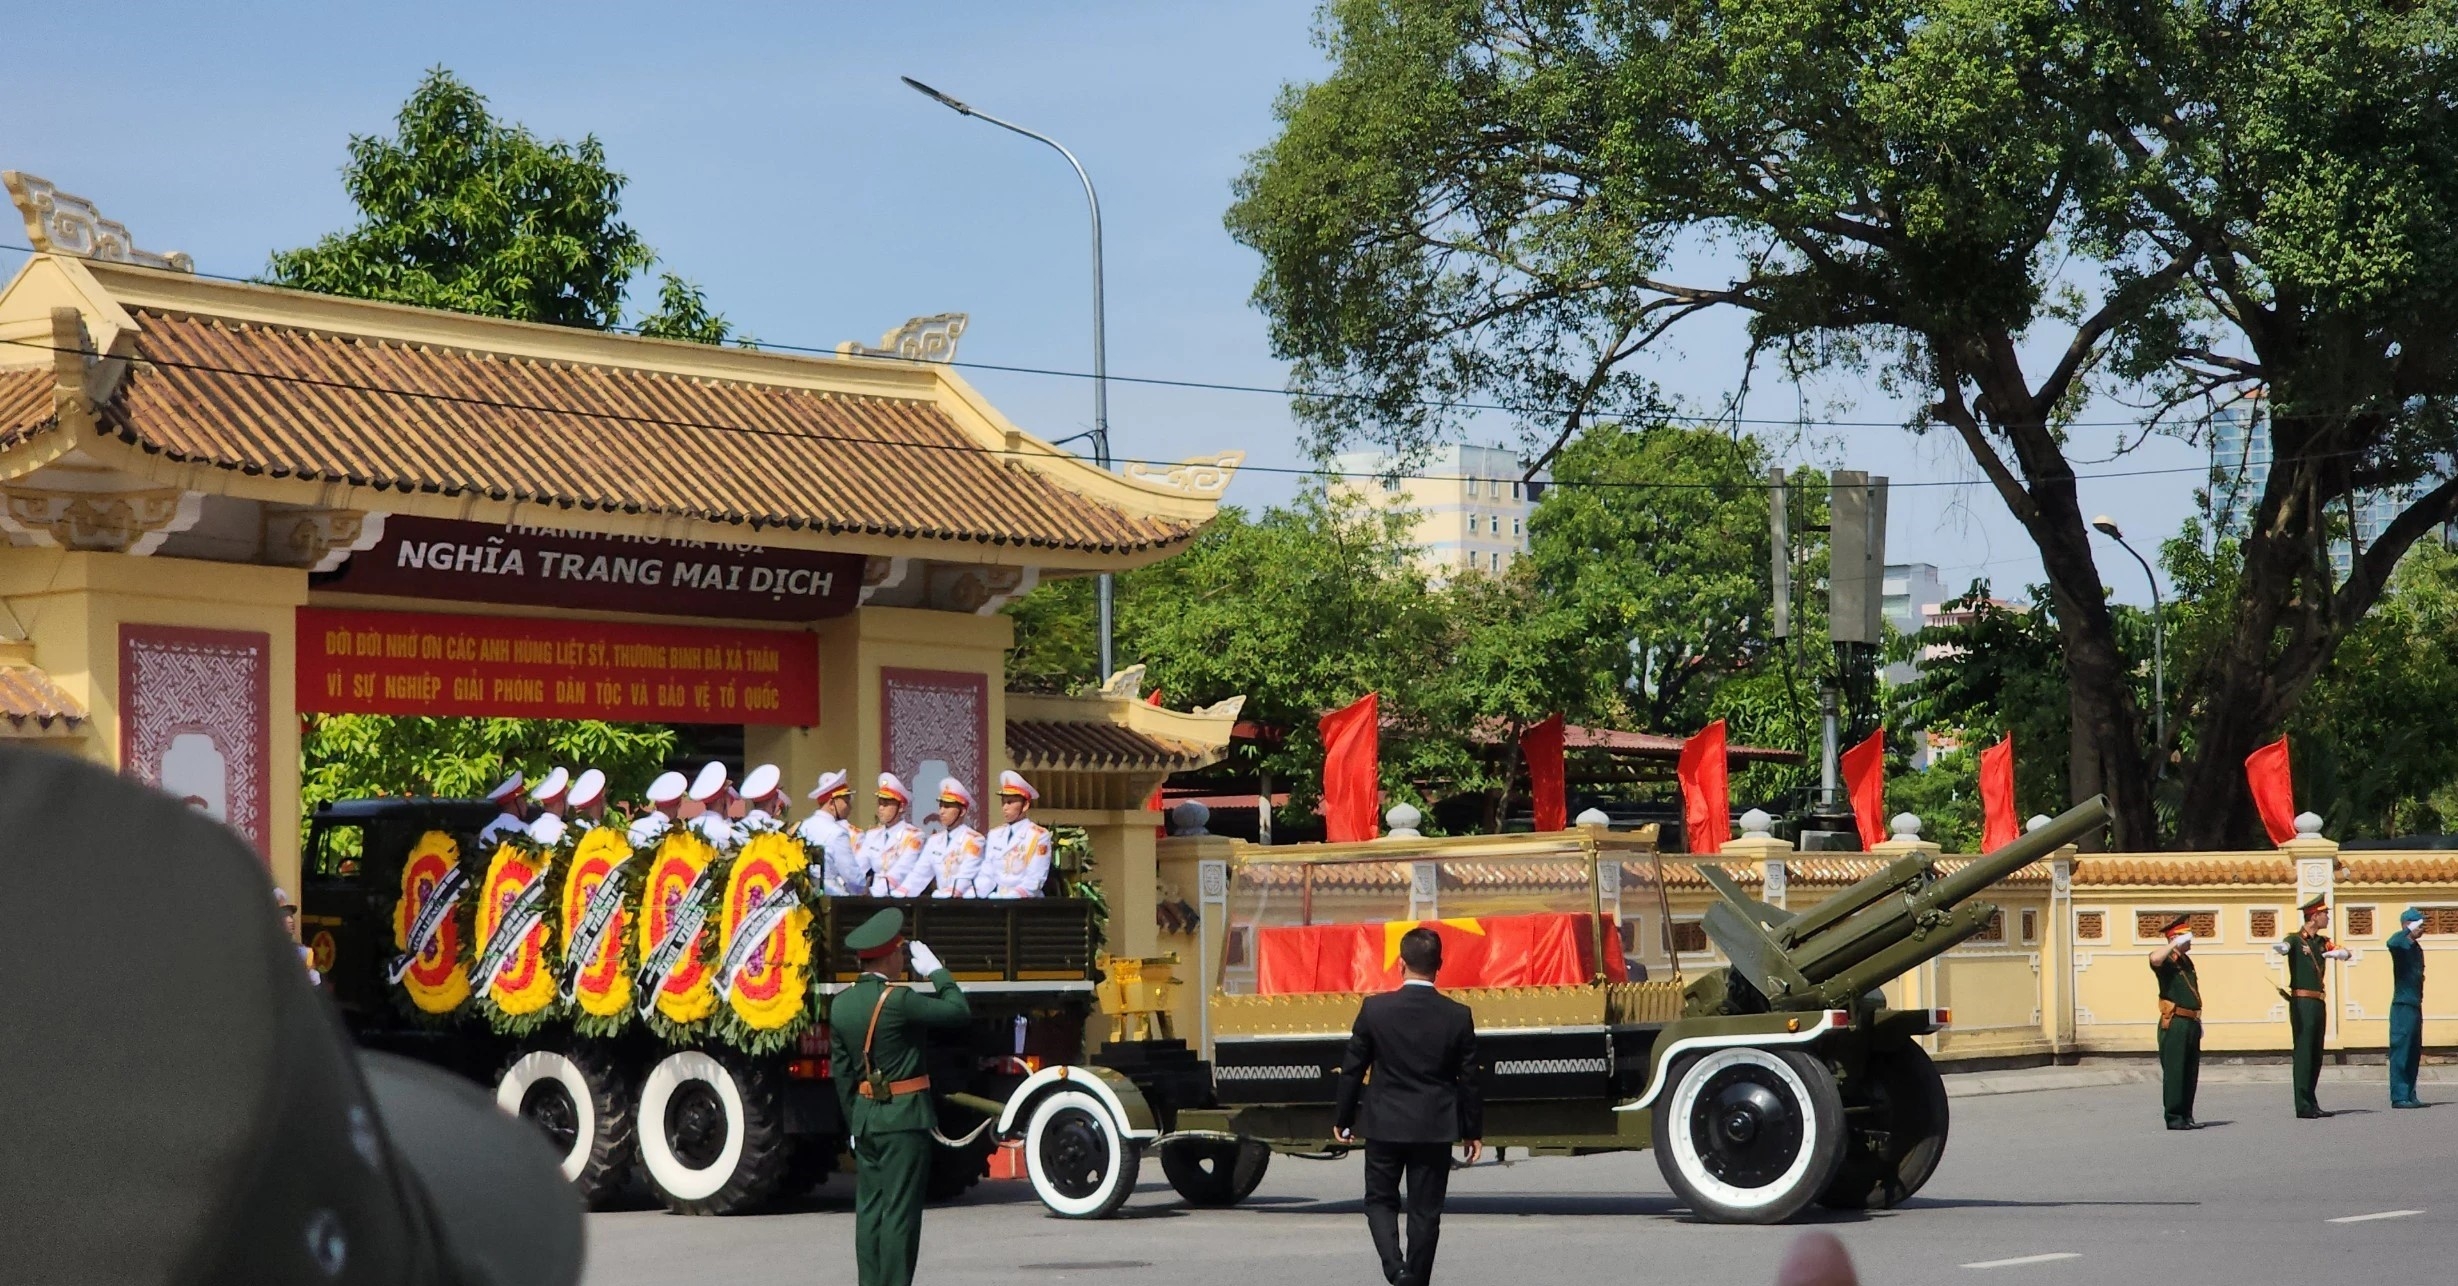 Nhà tư tưởng Nguyễn Phú Trọng, ngọn cờ lý luận của Đảng đã làm sáng tỏ lý luận về chủ nghĩa xã hội và con đường đi lên chủ nghĩa xã hội ở Việt Nam